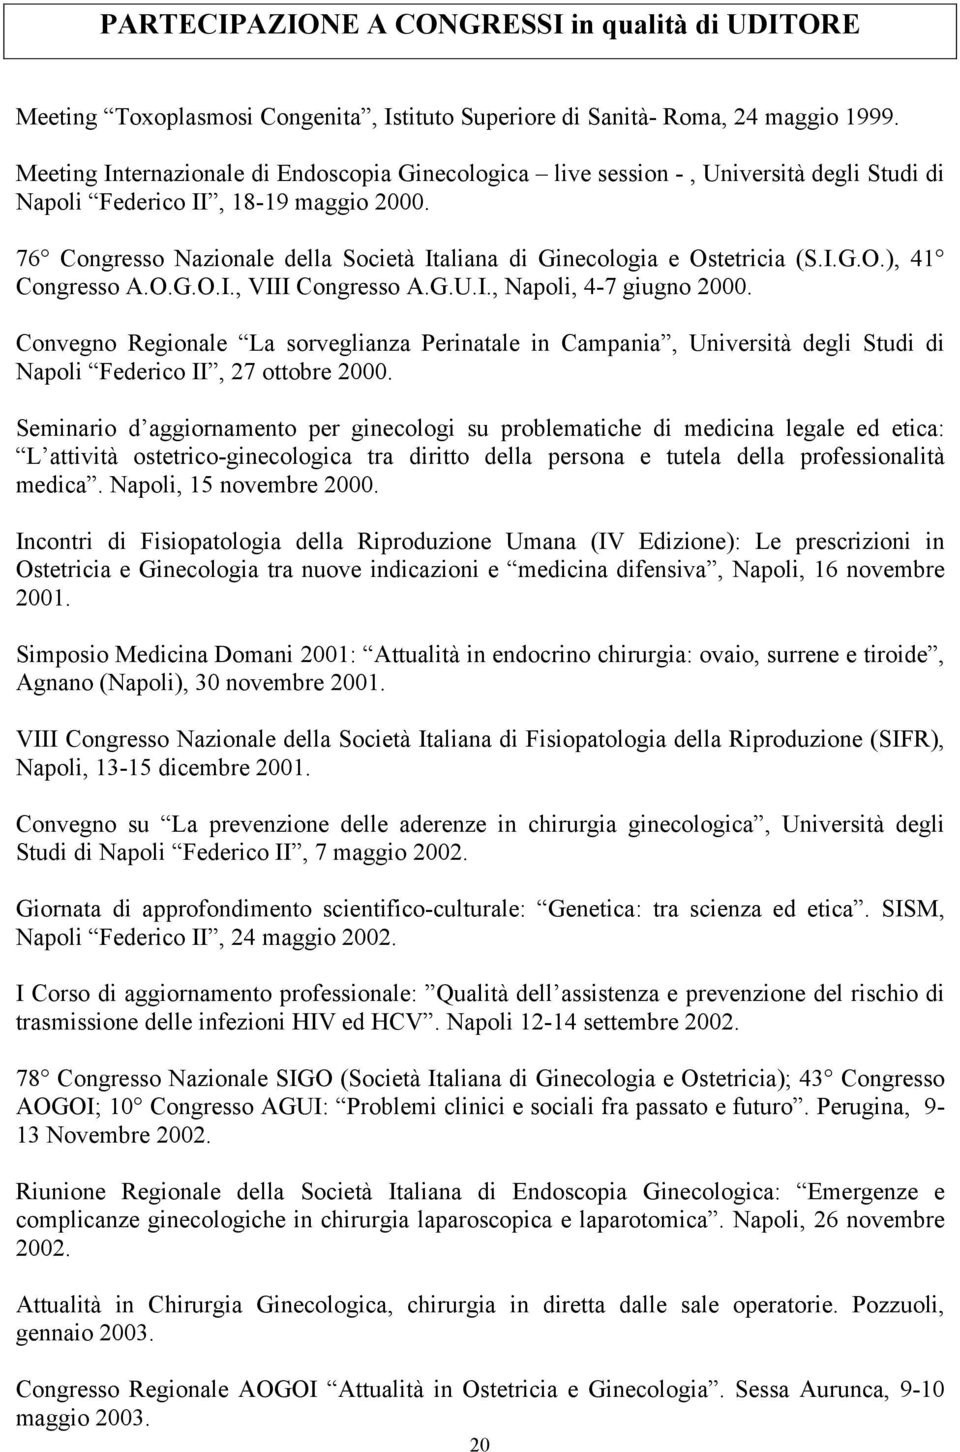 76 Congresso Nazionale della Società Italiana di Ginecologia e Ostetricia (S.I.G.O.), 41 Congresso A.O.G.O.I., VIII Congresso A.G.U.I., Napoli, 4-7 giugno 2000.